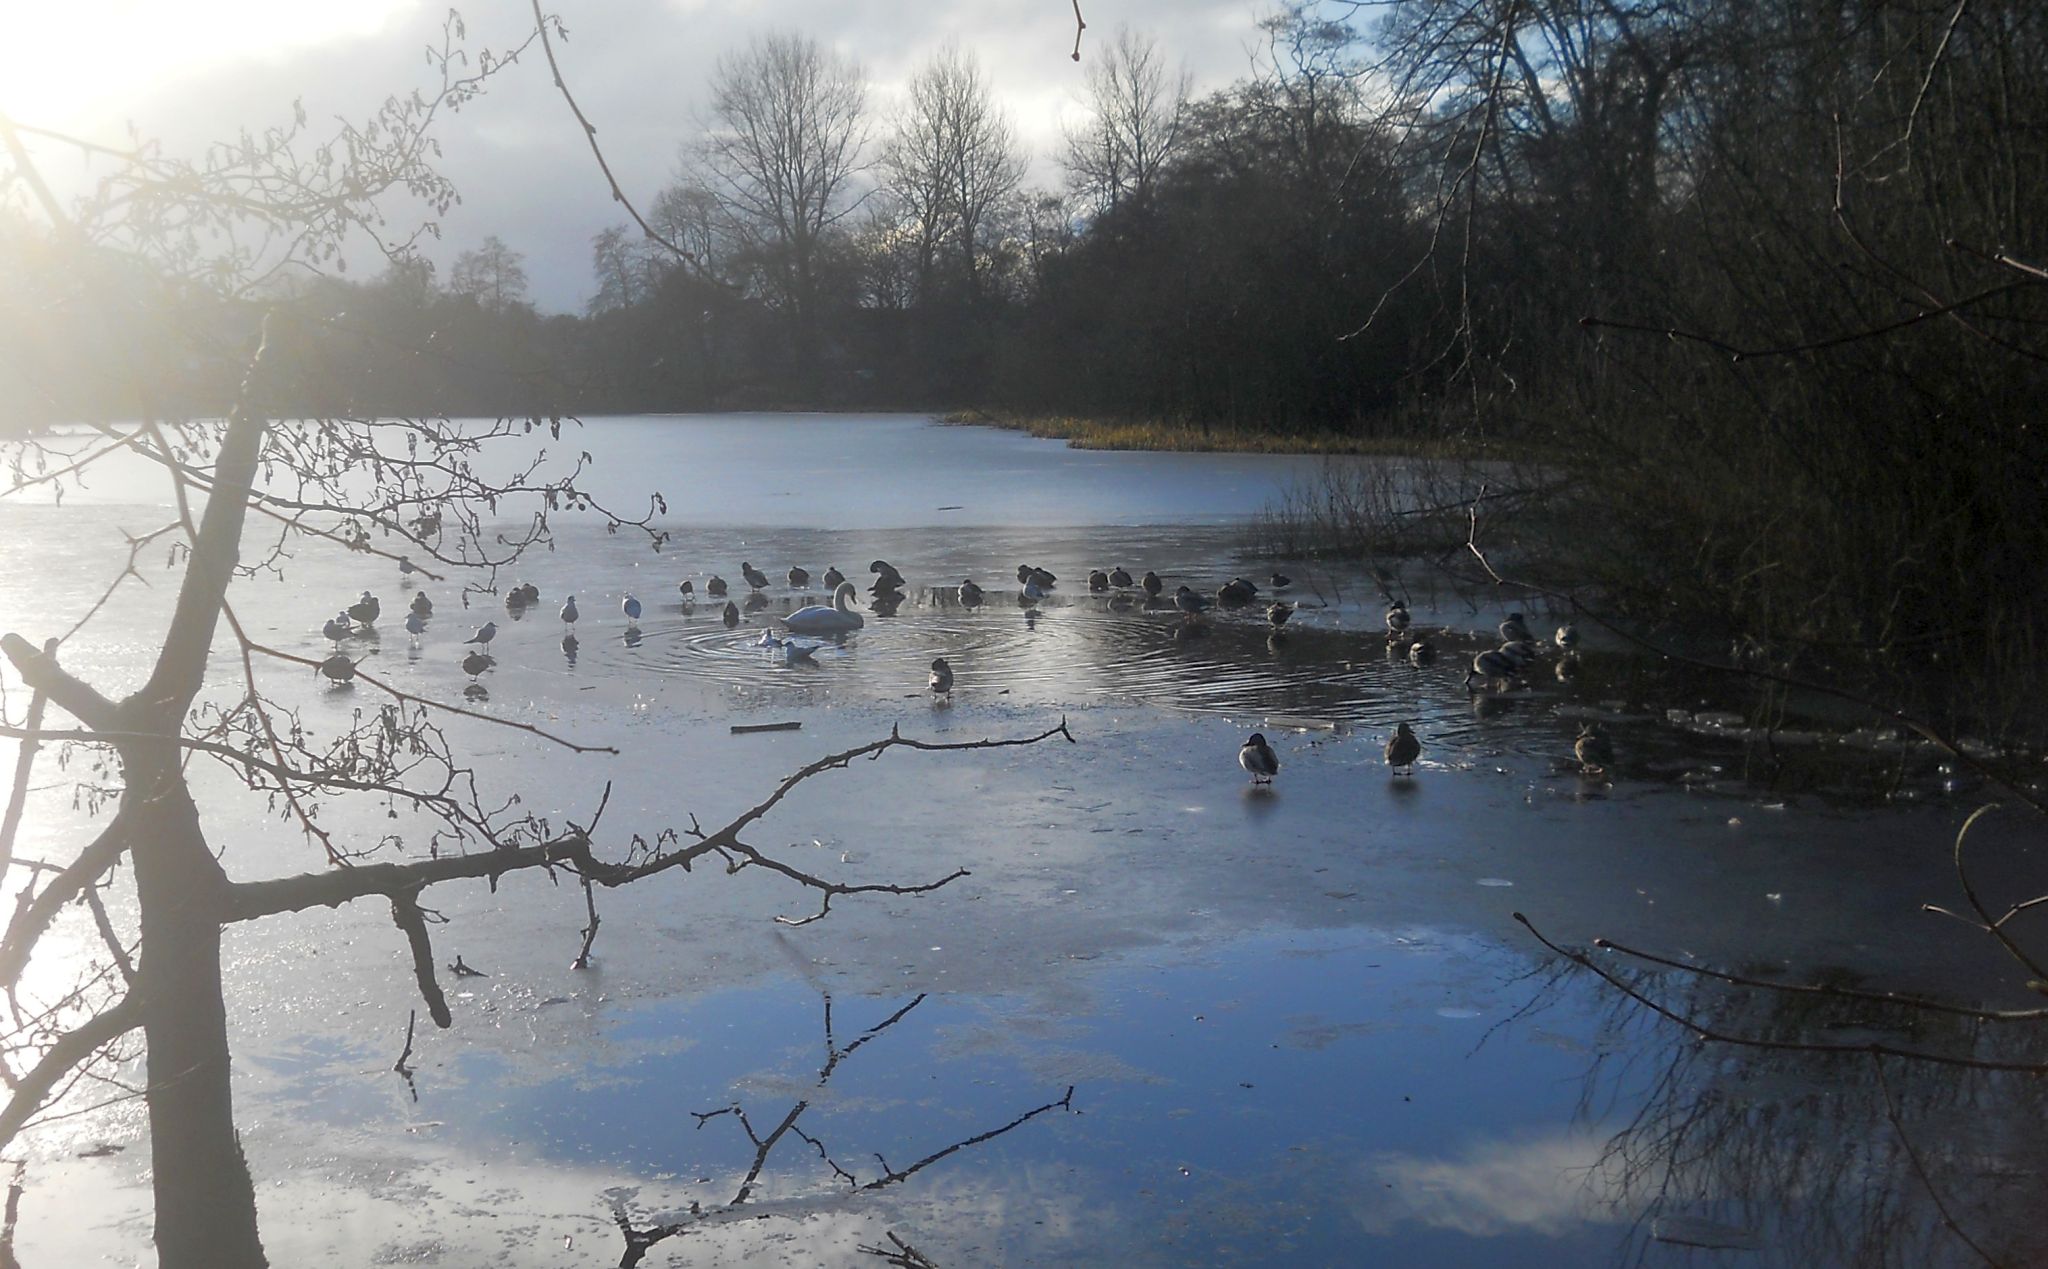 Winter at Kilmardinny Loch in Bearsden